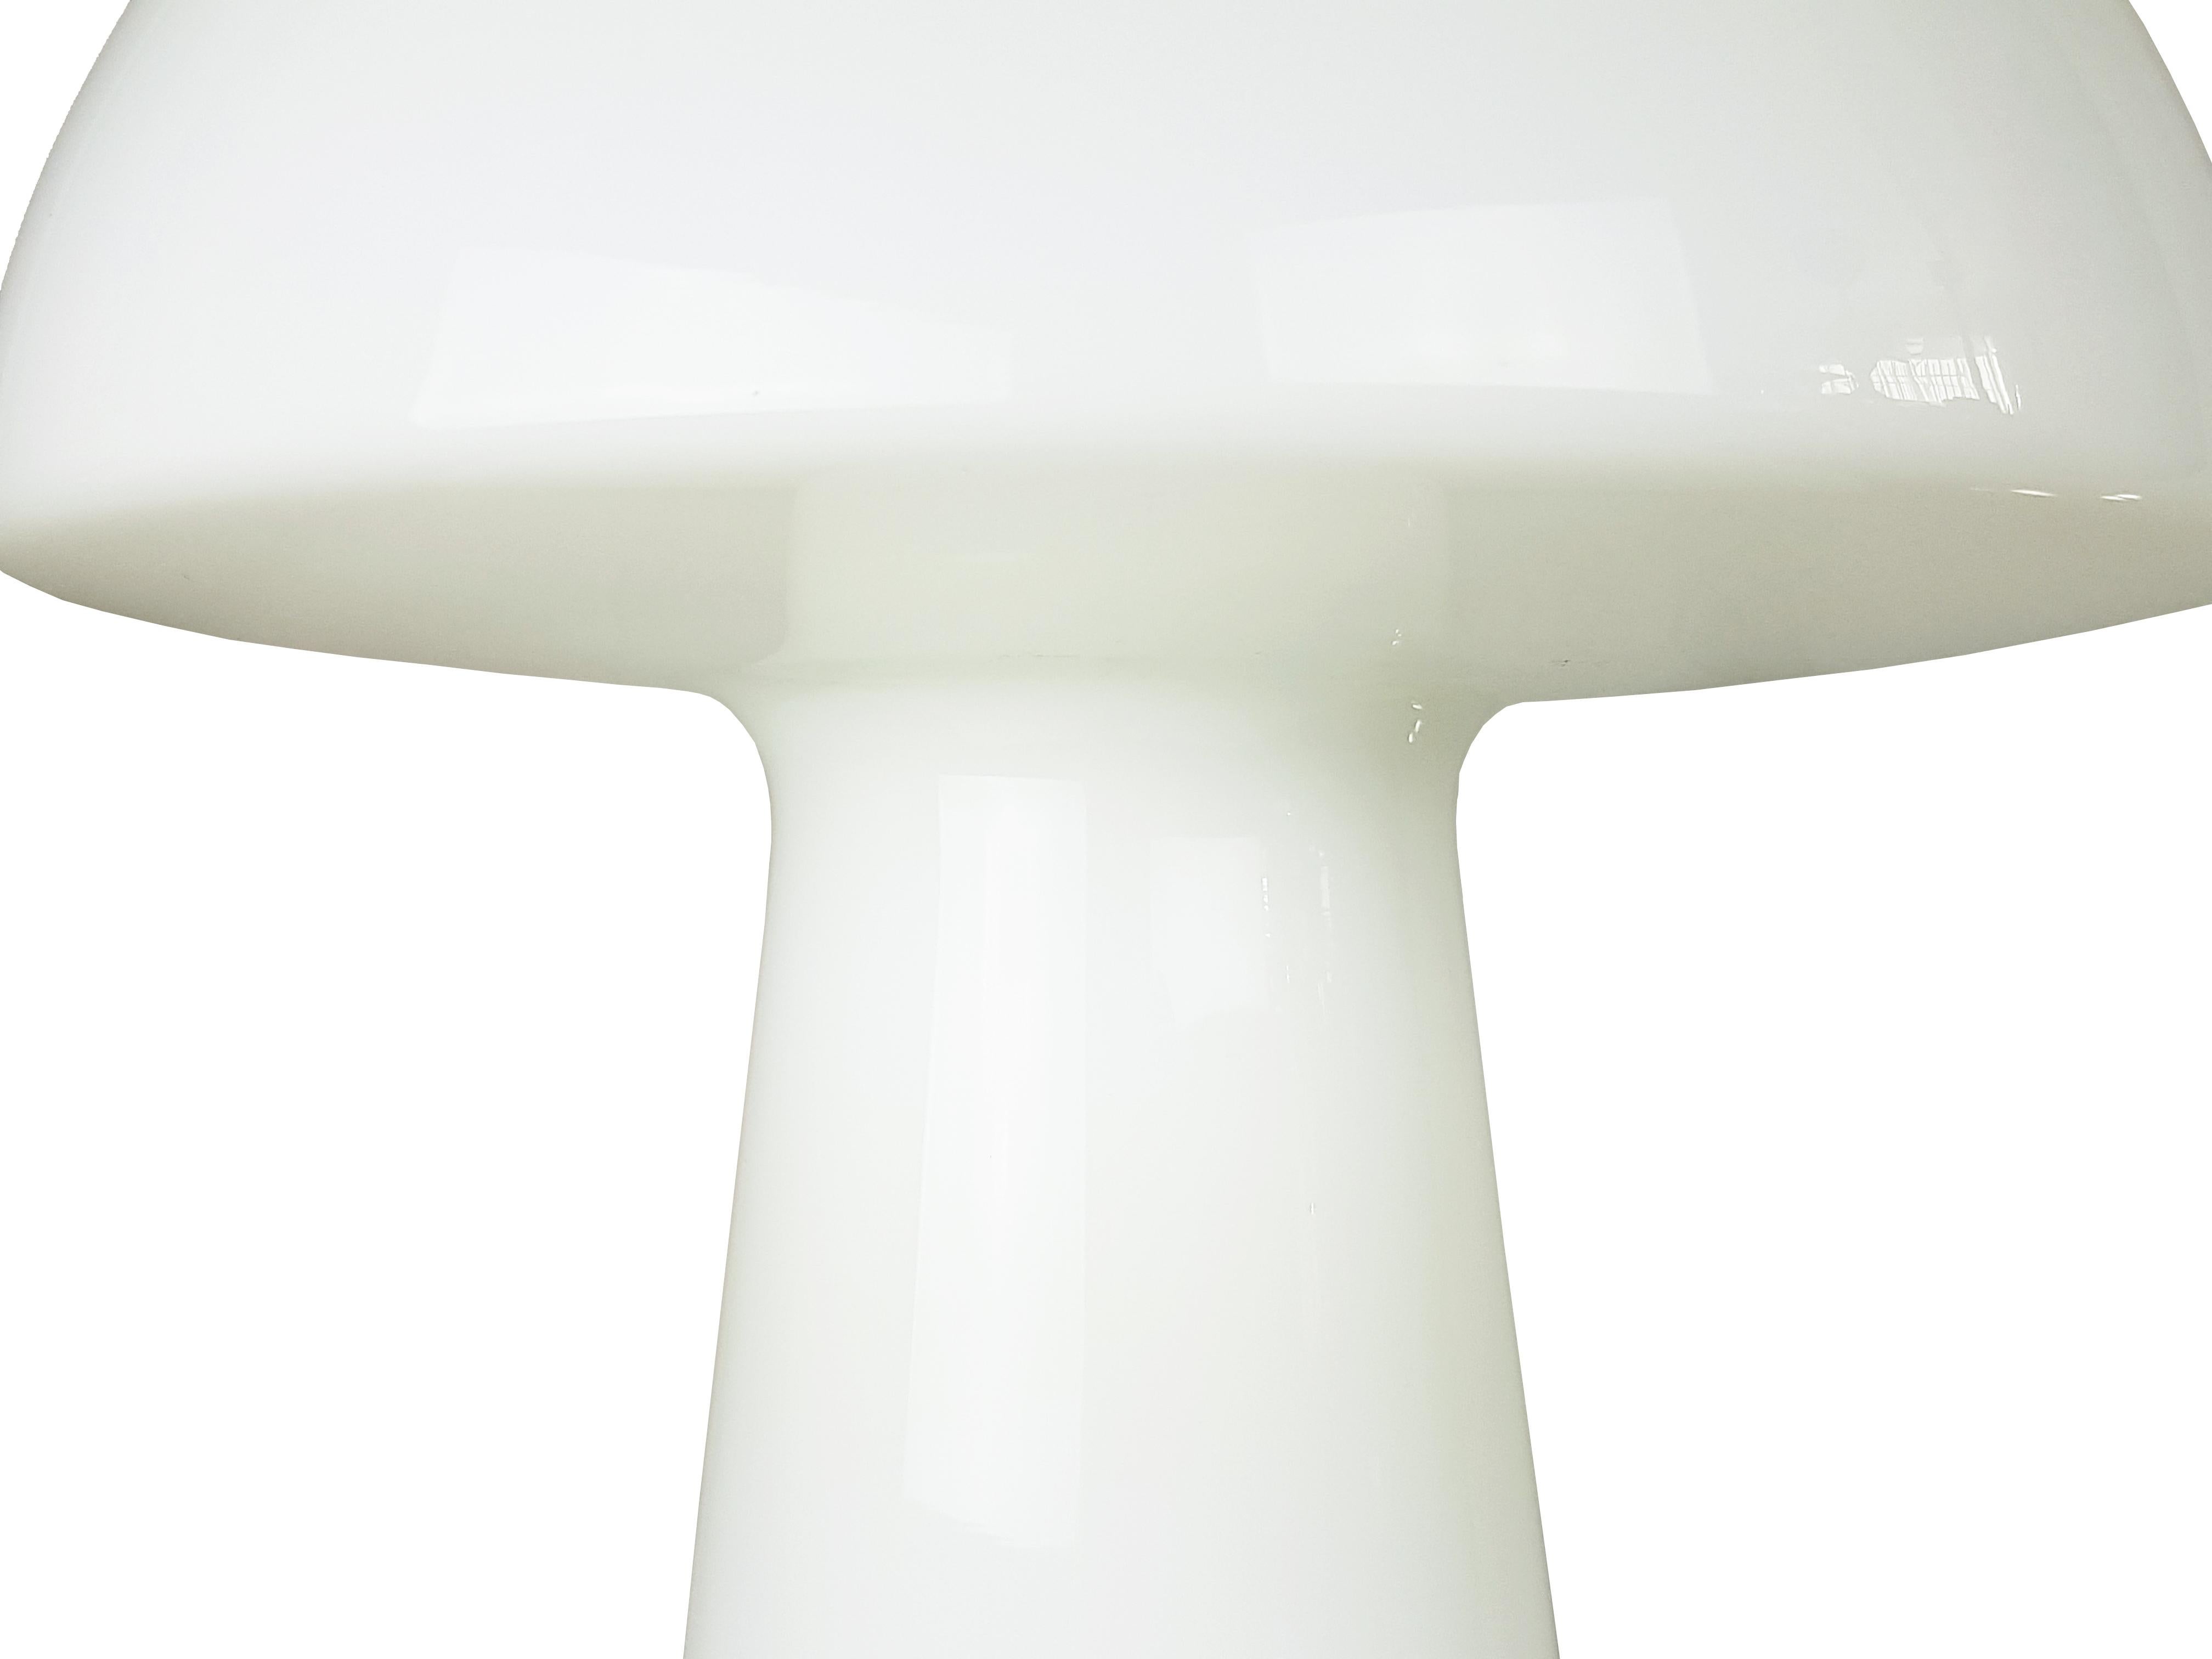 Große weiße und klare Murano-Tischlampe, hergestellt in Italien um 1980.
Sehr guter Zustand: keine Kratzer oder Brüche. Originale elektrische Anlage.